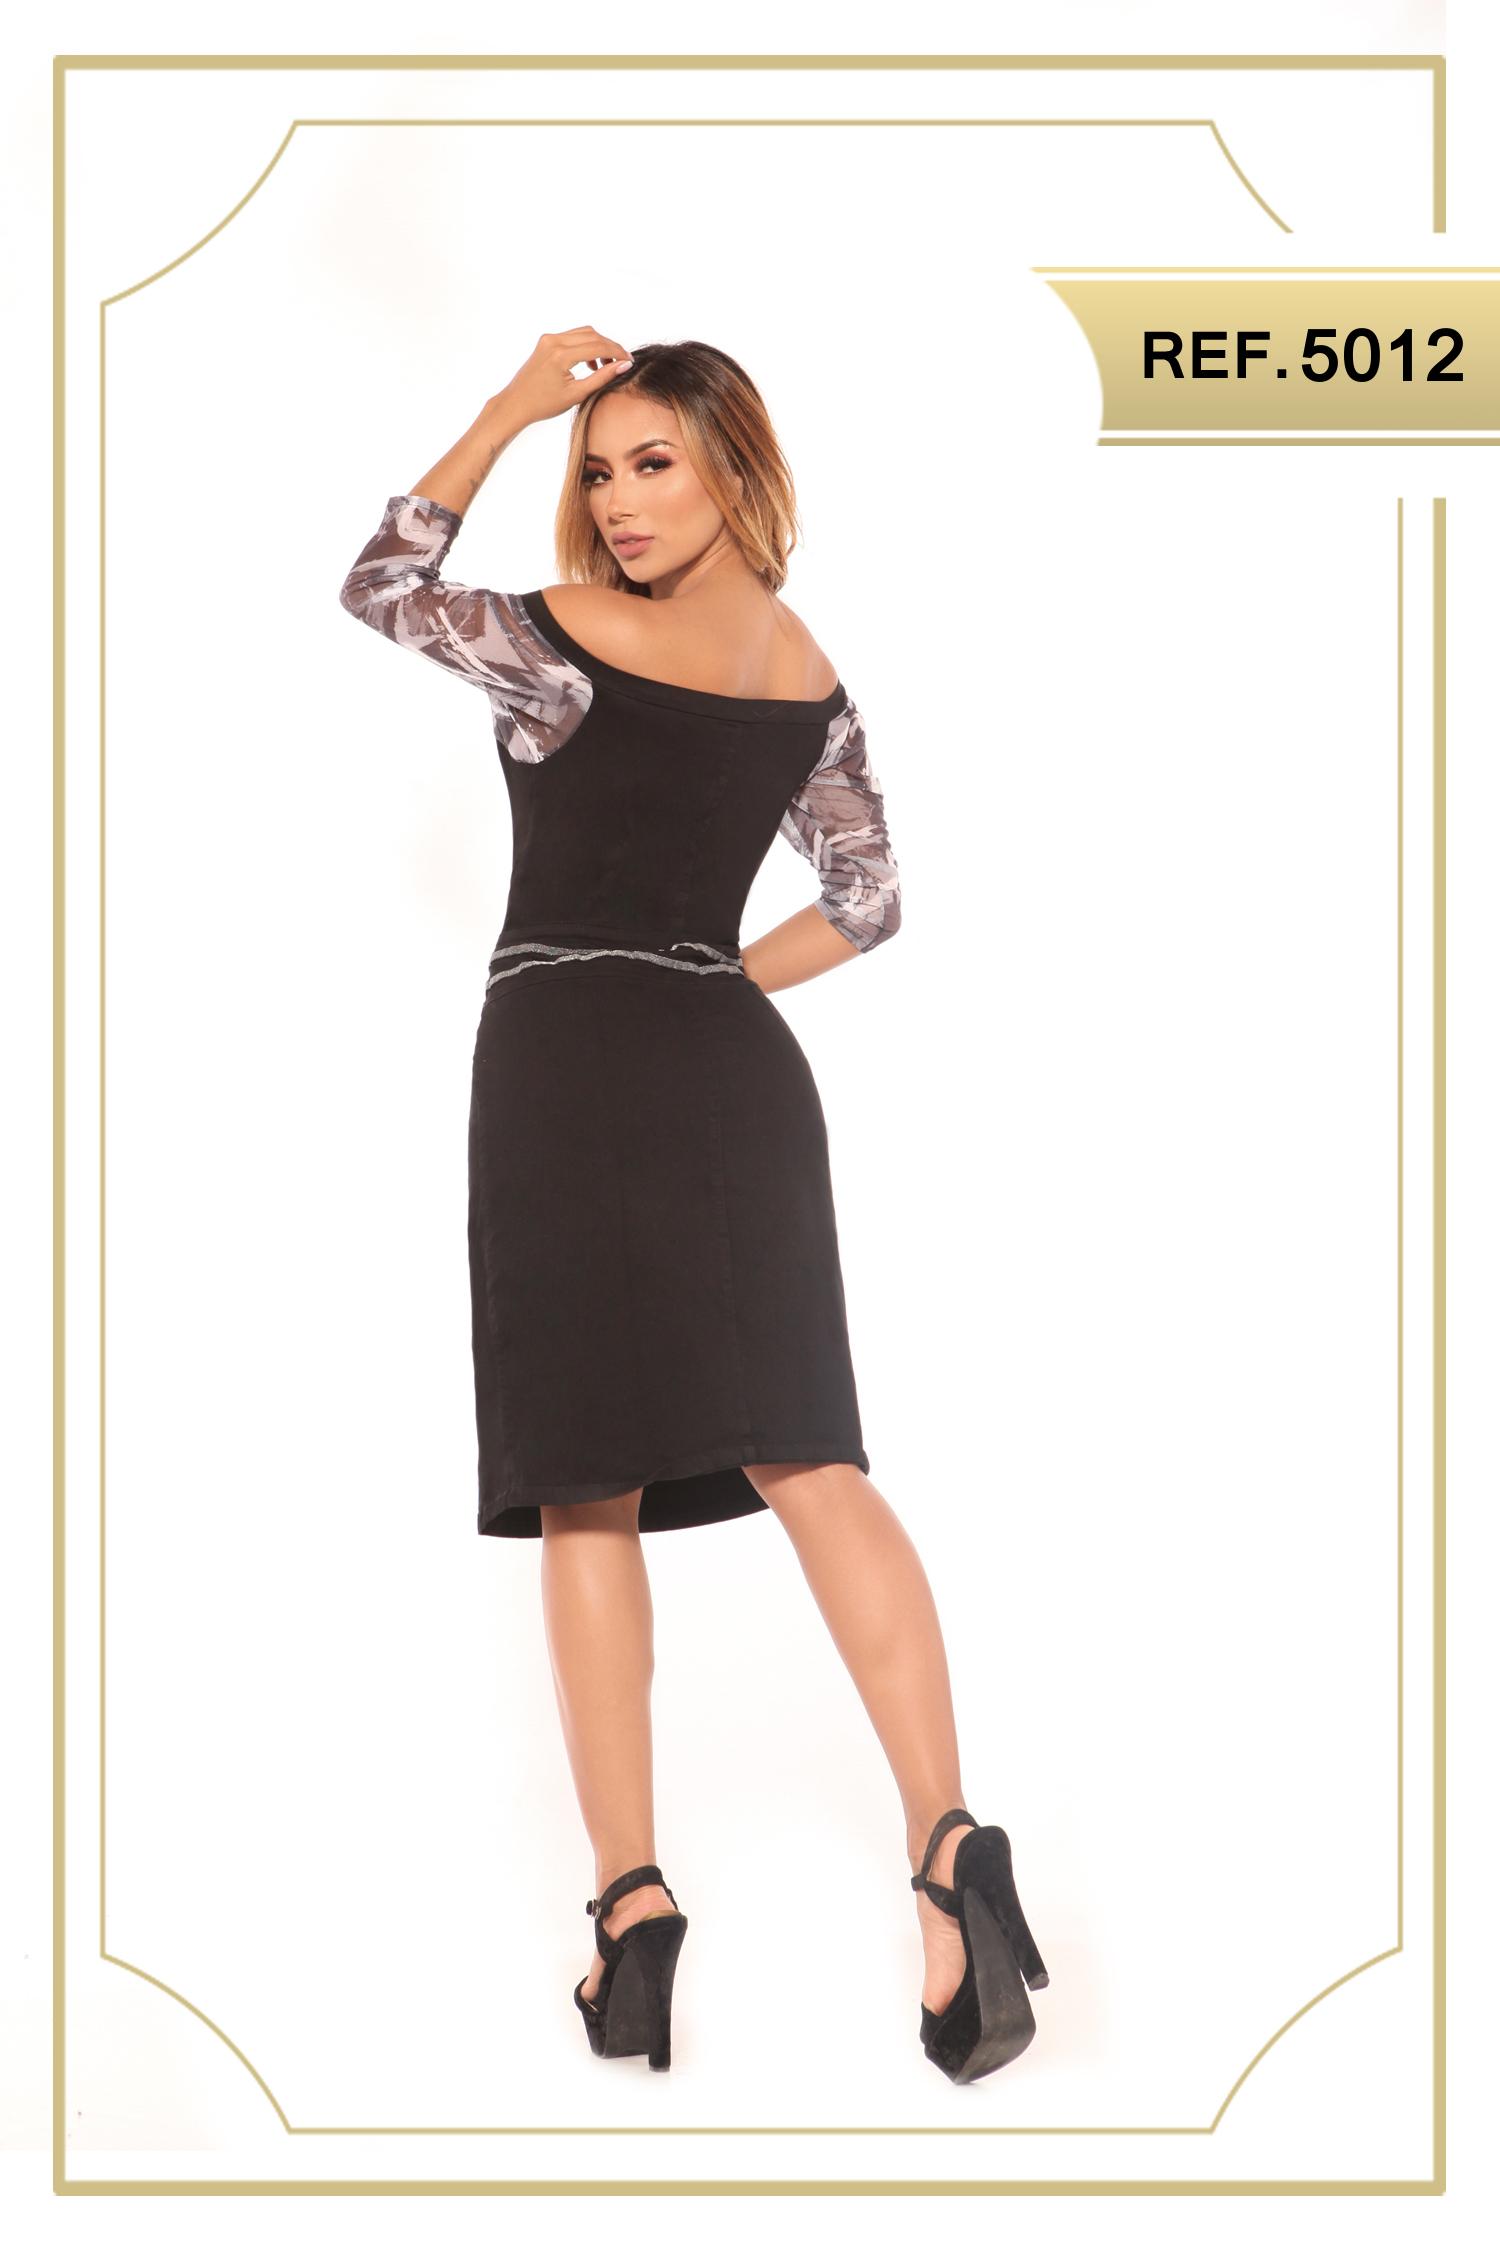 Vestido Colombiano de Jean color negro, con cremallera frontal, estilo falda de media pierna, con apertura decorativo en una pierna. Mangas hasta el antebrazo con decorado floral.